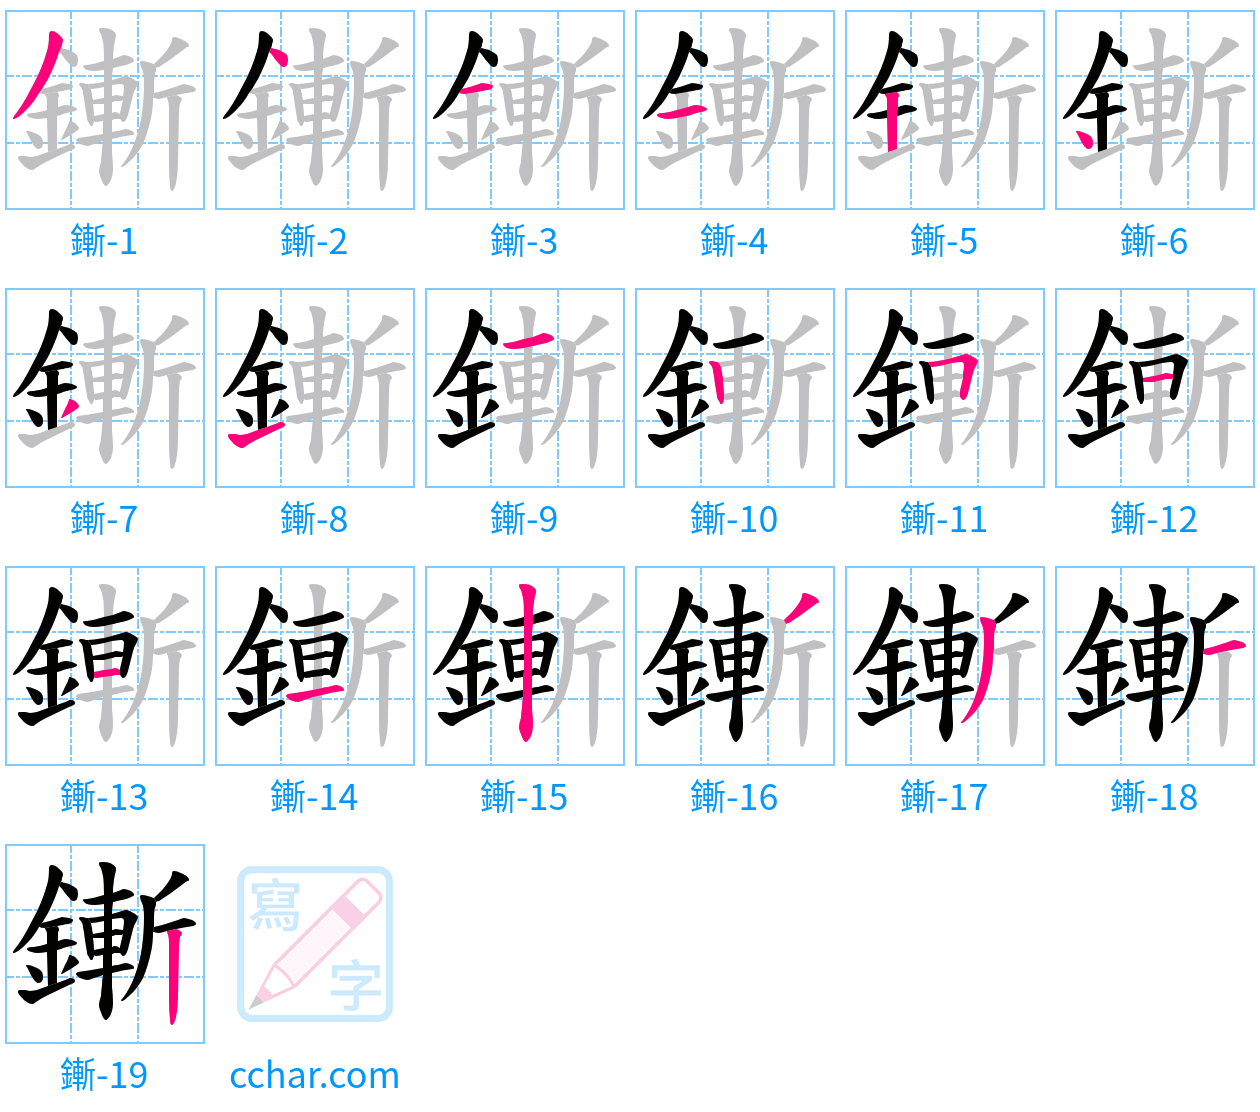 鏩 stroke order step-by-step diagram